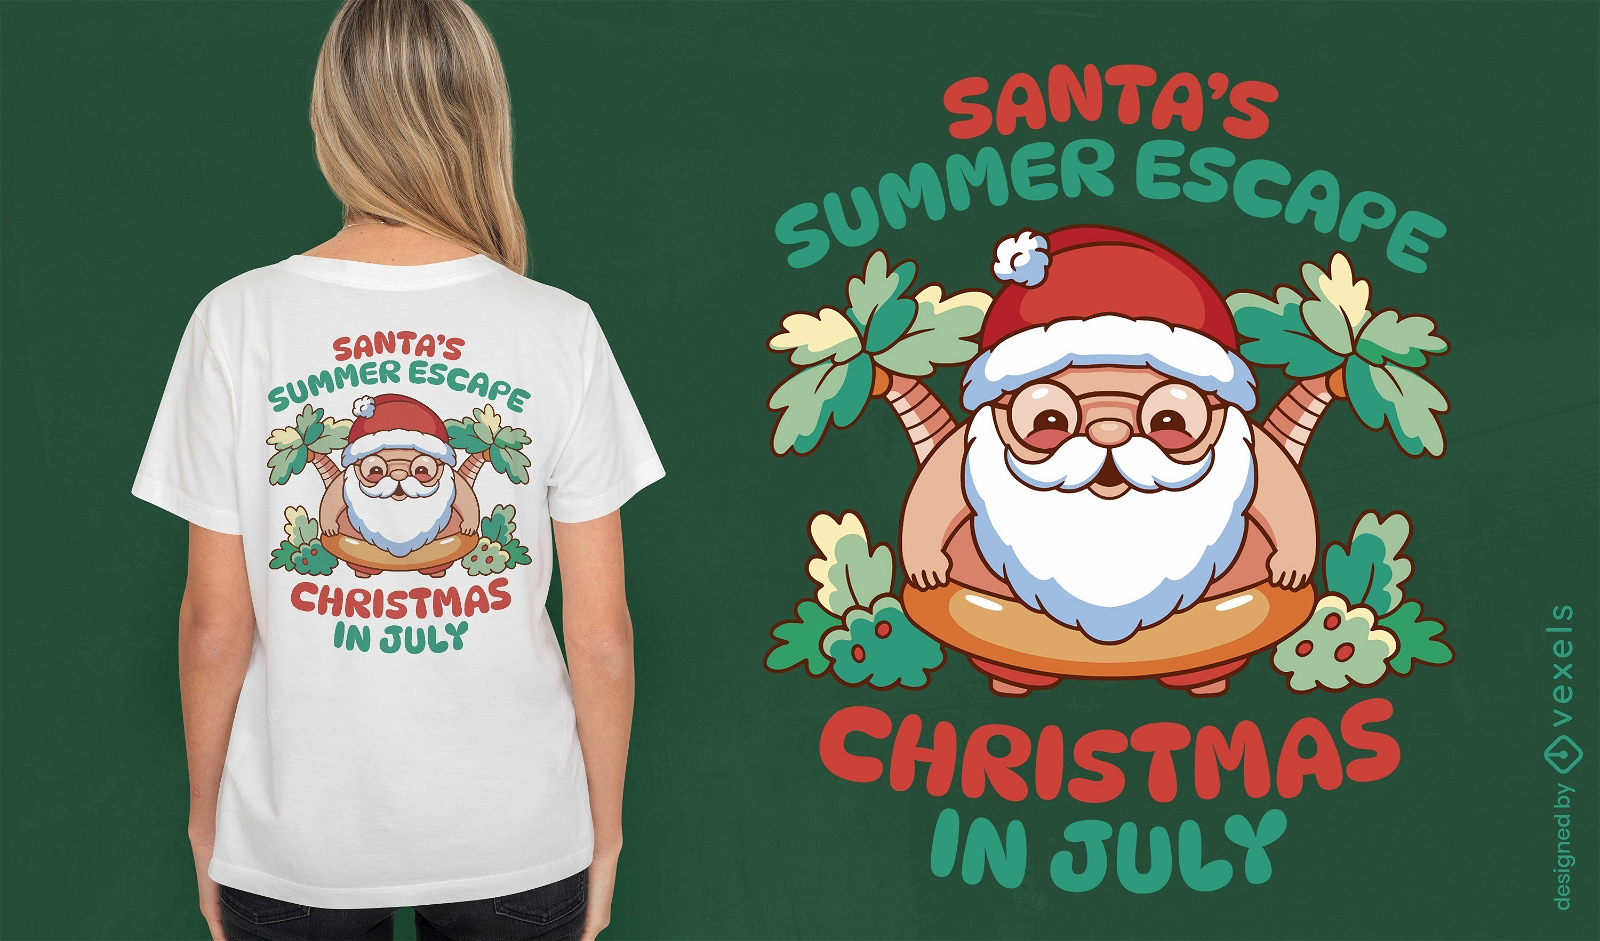 Diseño de camiseta de escape navideño de verano.